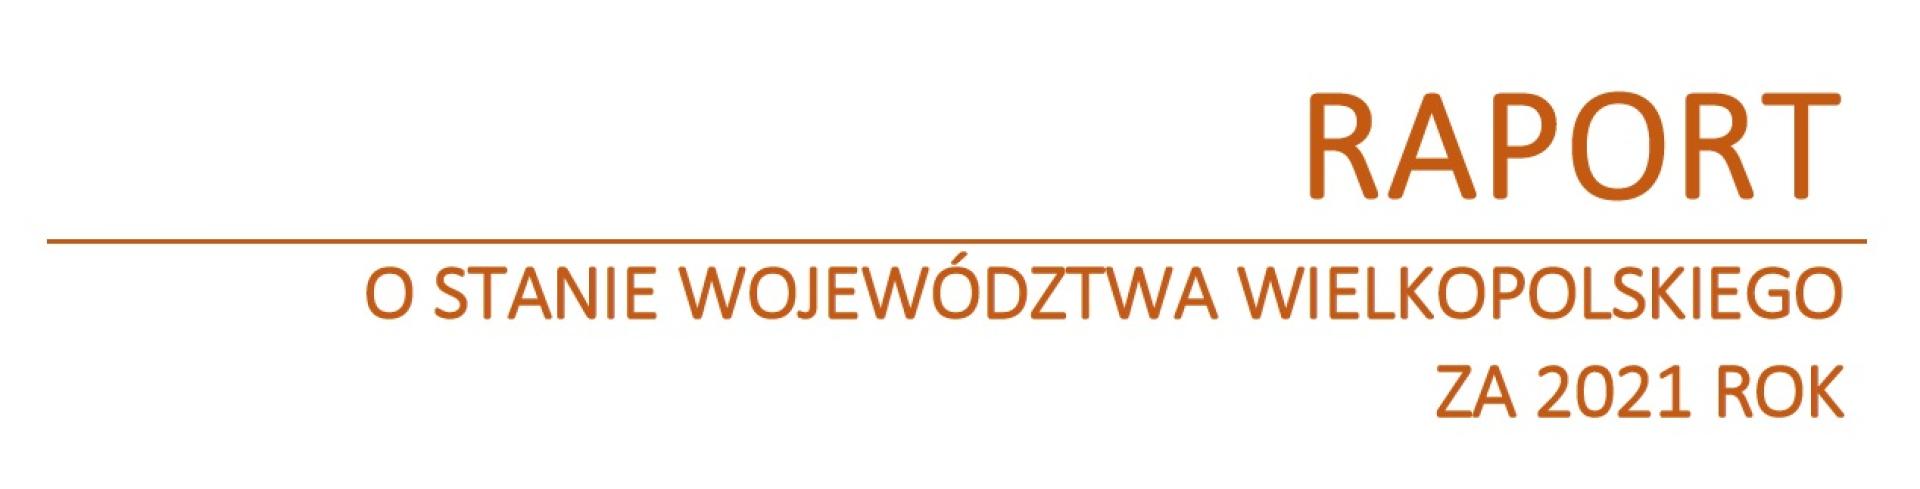 Informacja o możliwości udziału mieszkańców Wielkopolski w debacie nt. Raportu o stanie Województwa Wielkopolskiego za 2021 rok - zobacz więcej